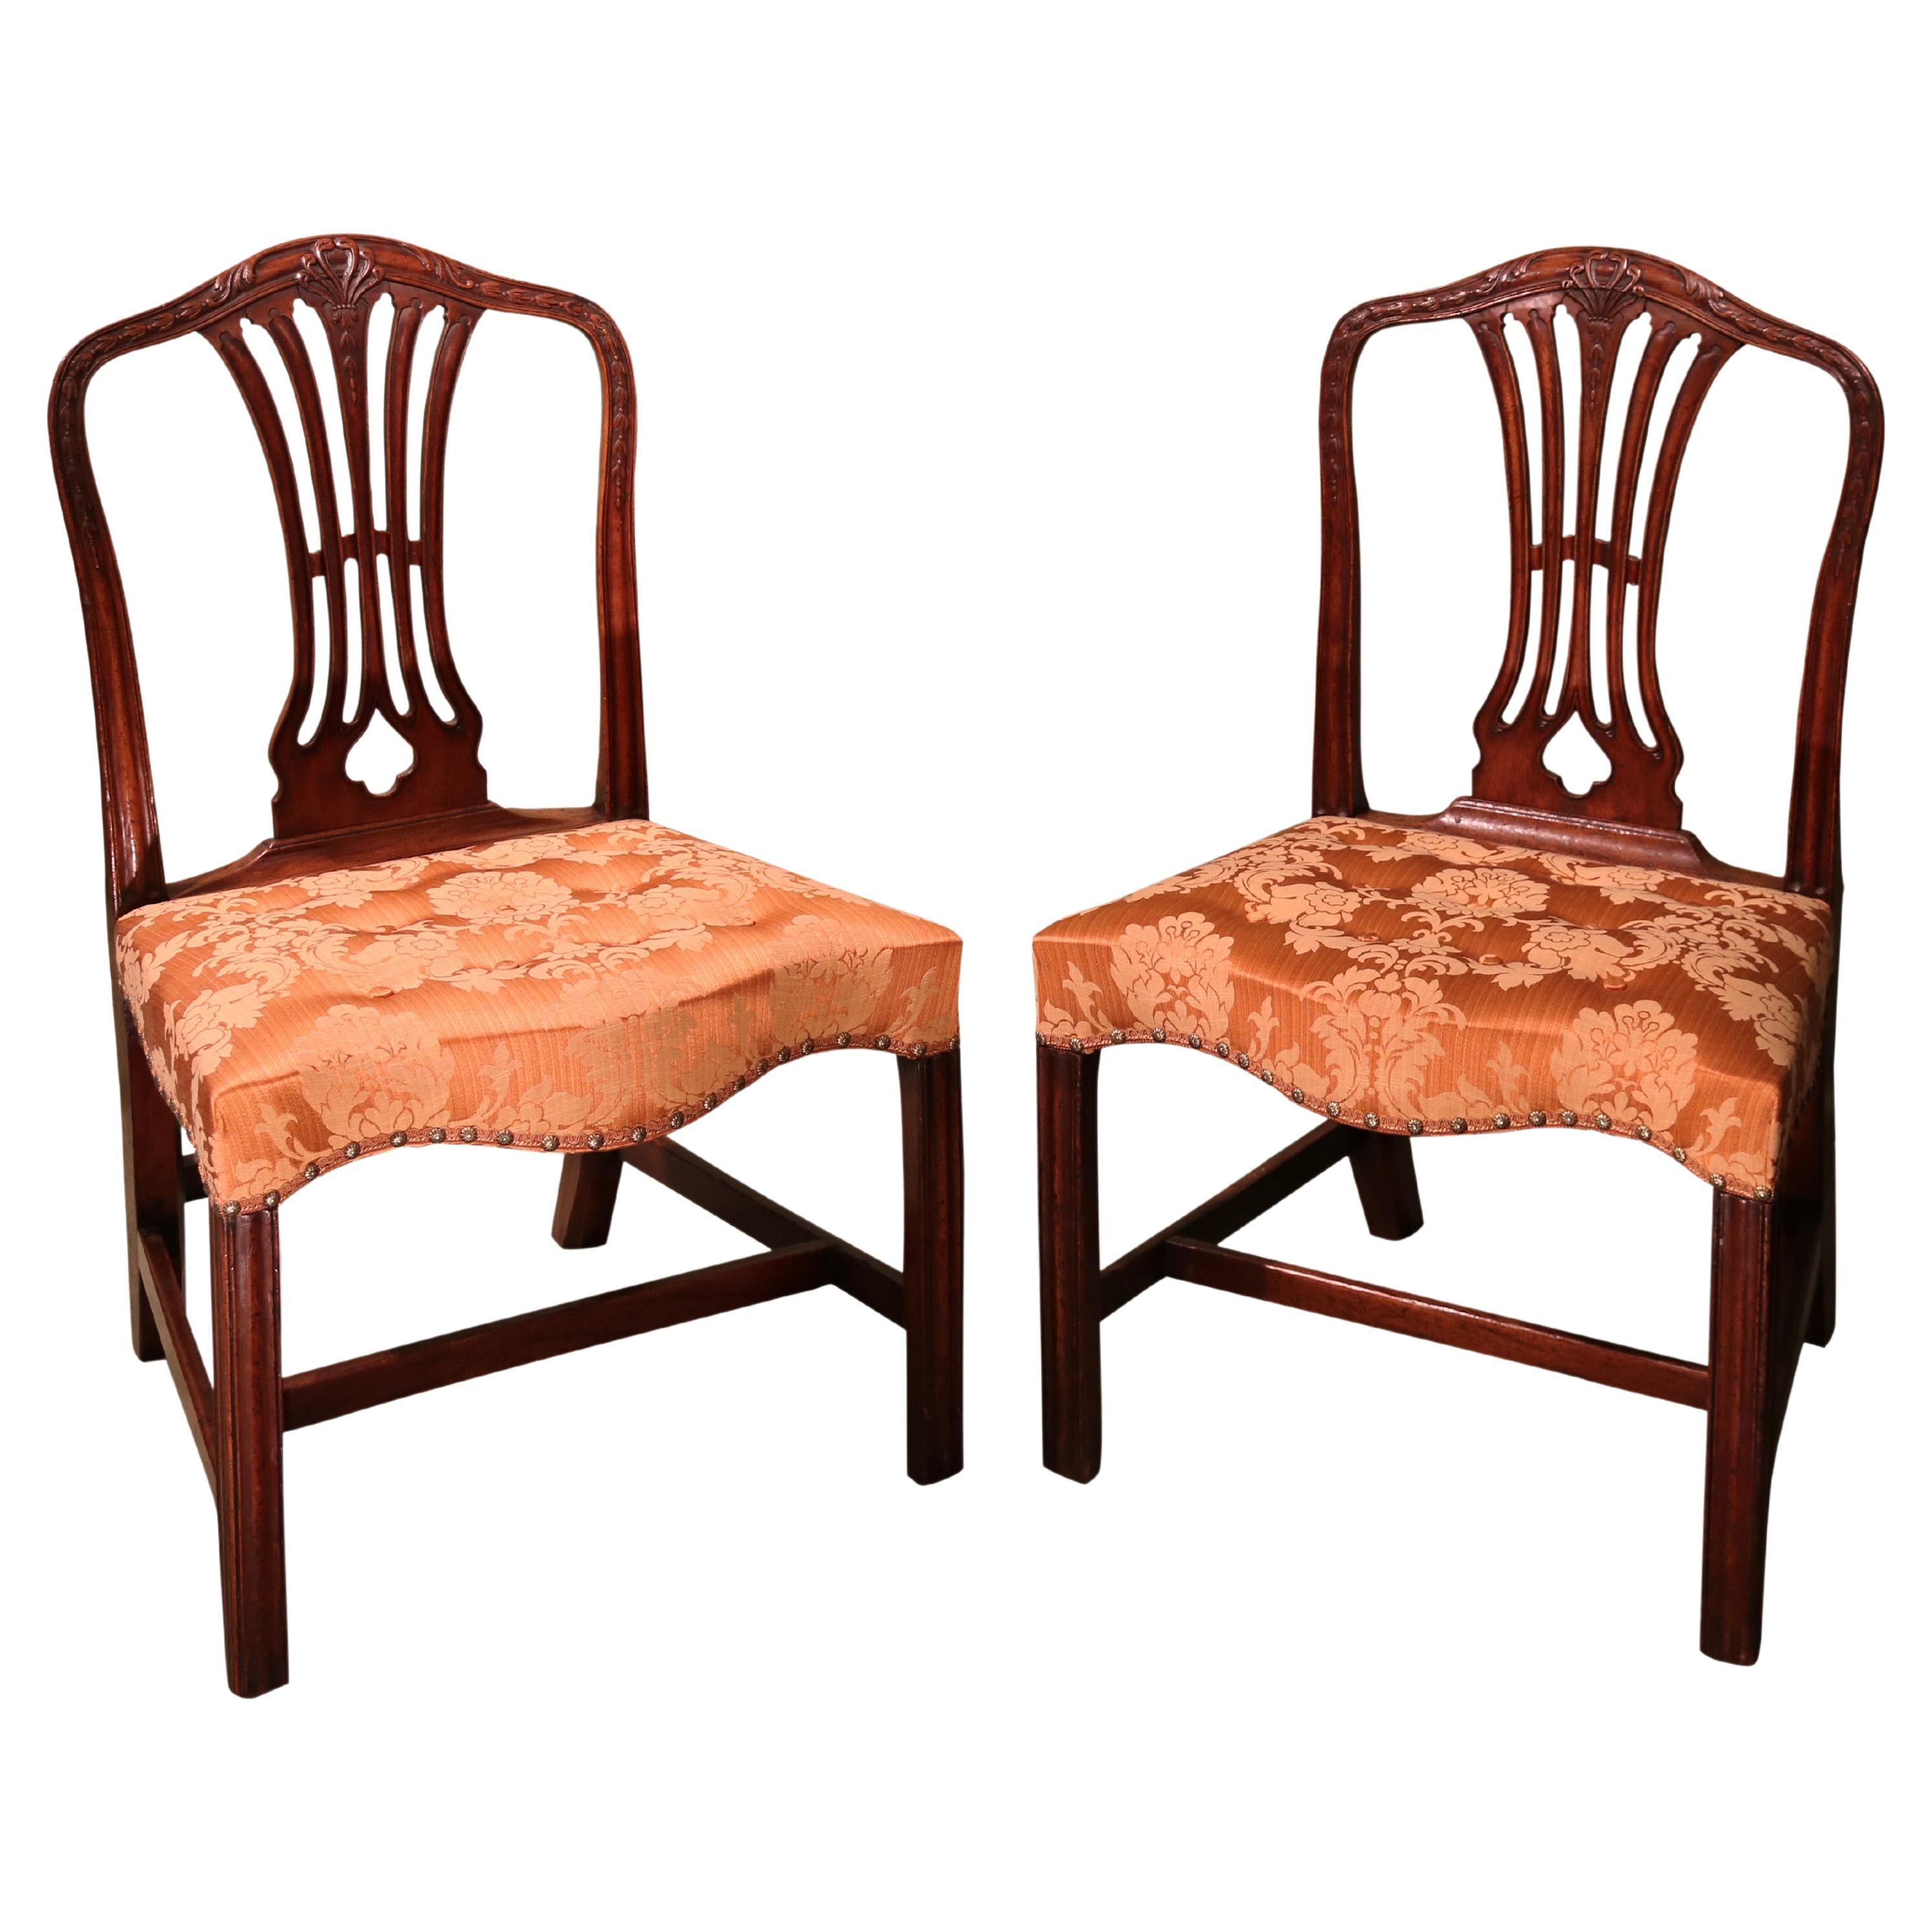 Pair of Hepplewhite Period Mahogany Single Chairs